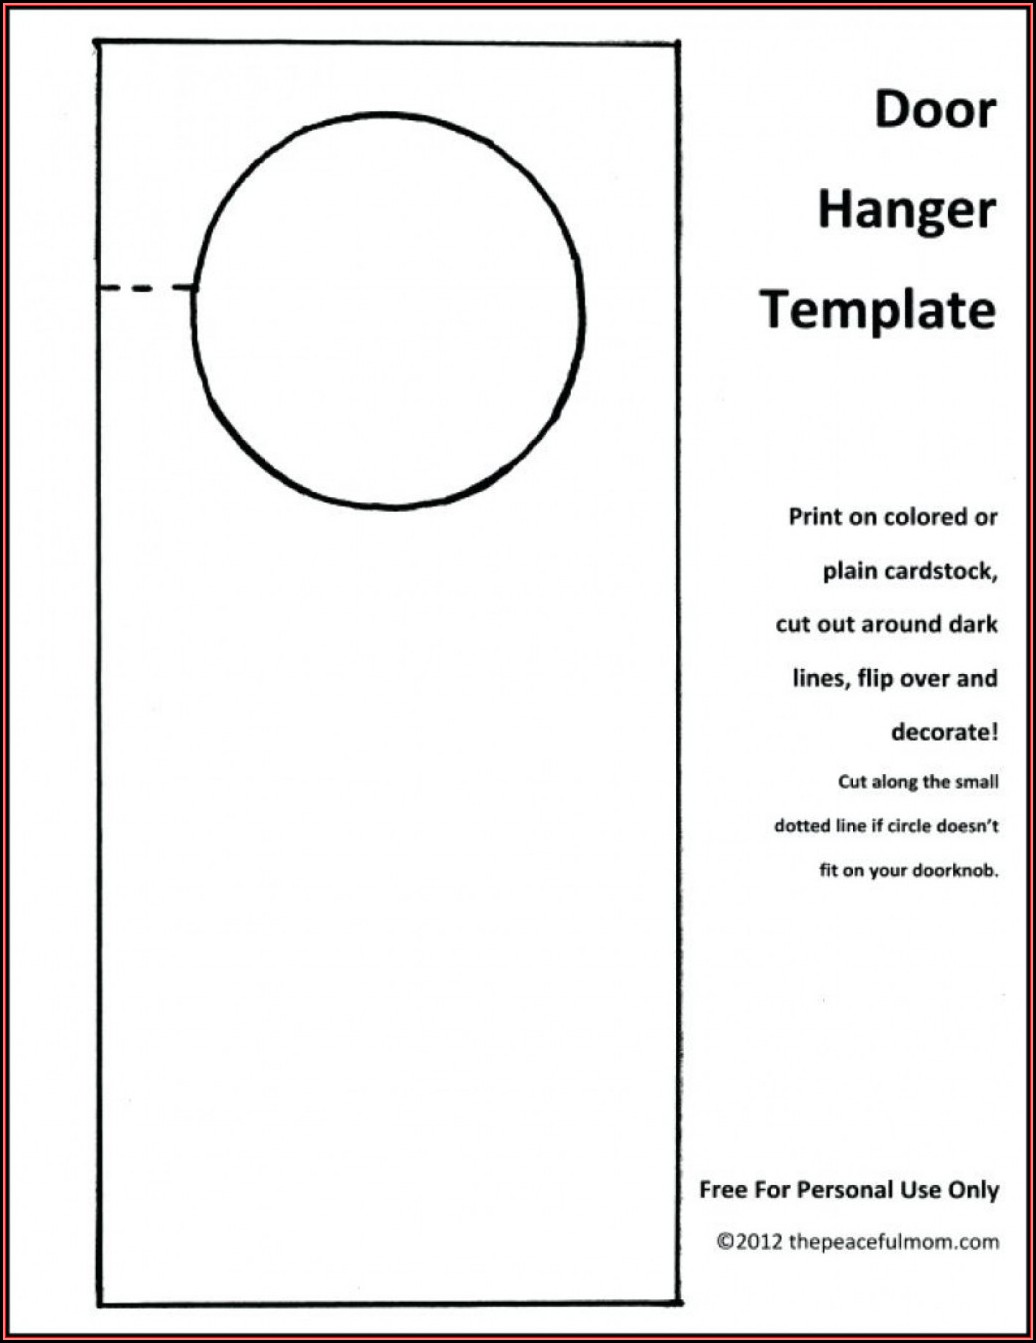 Free Door Hanger Template Illustrator